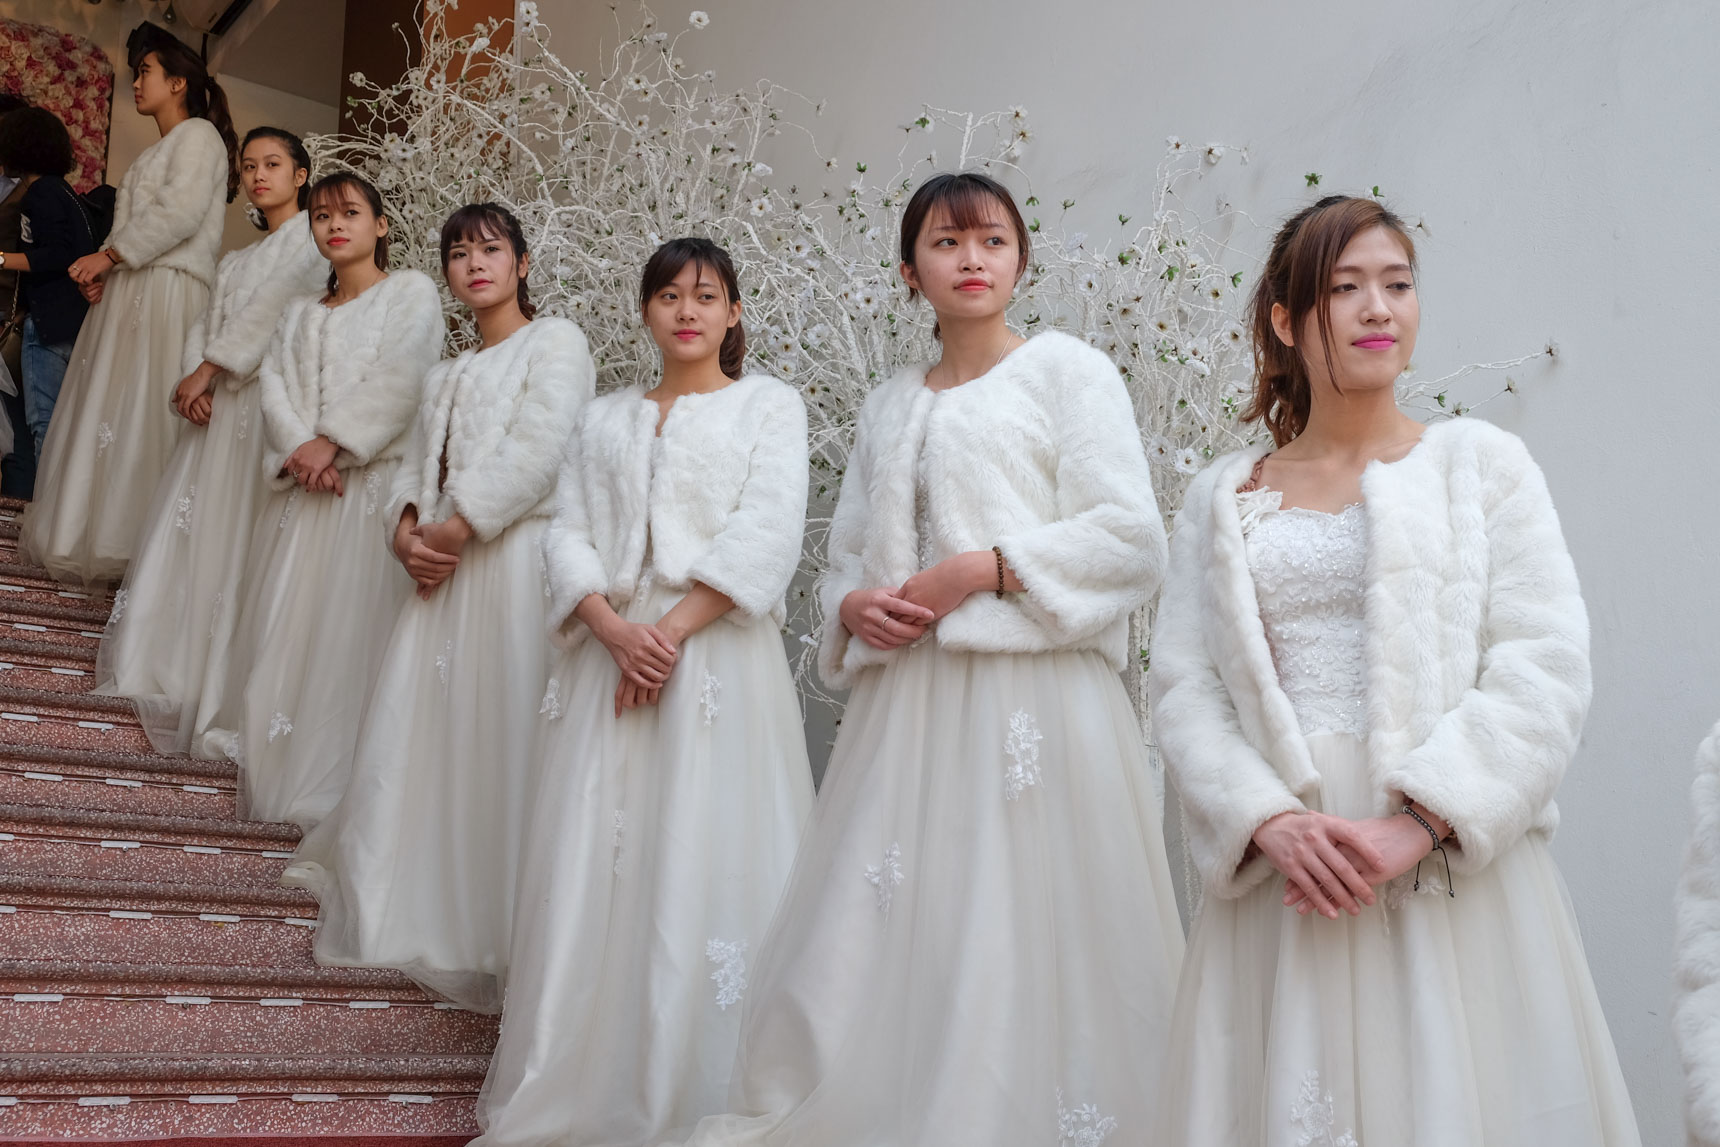 Wedding Reception, Láng Hạ, Ba Đình District